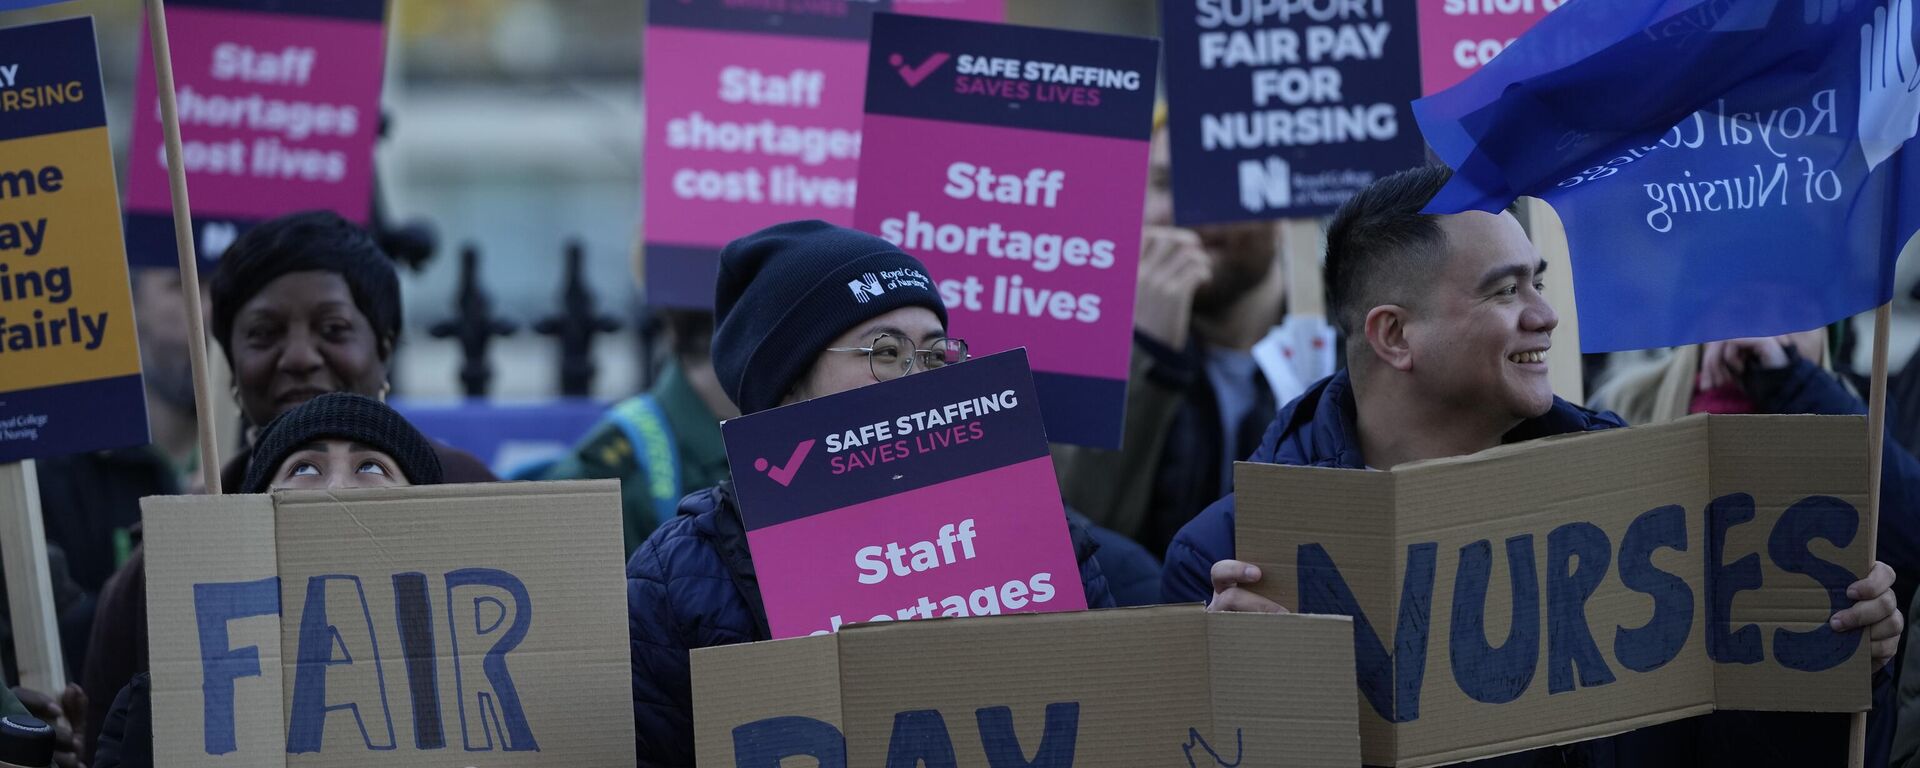 Manifestantes sostienen pancartas en apoyo a una huelga de enfermeras frente al Hospital St Thomas en Londres, 20 de diciembre de 2022.  - Sputnik Mundo, 1920, 21.12.2022